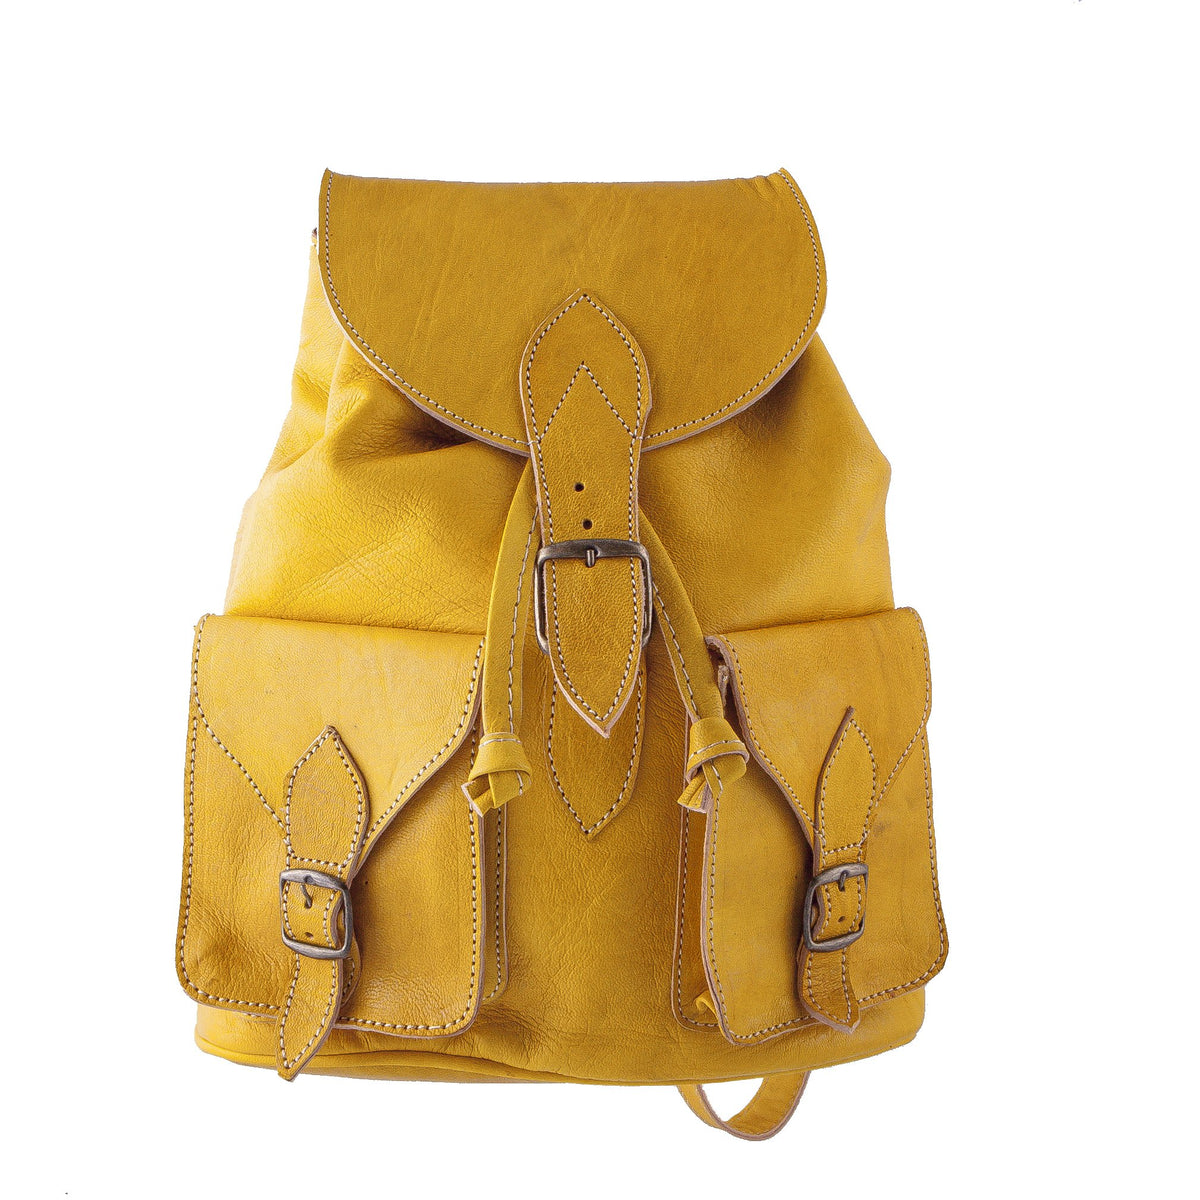 Vintage Style Women's Backpack - Handmade - Dark Brown